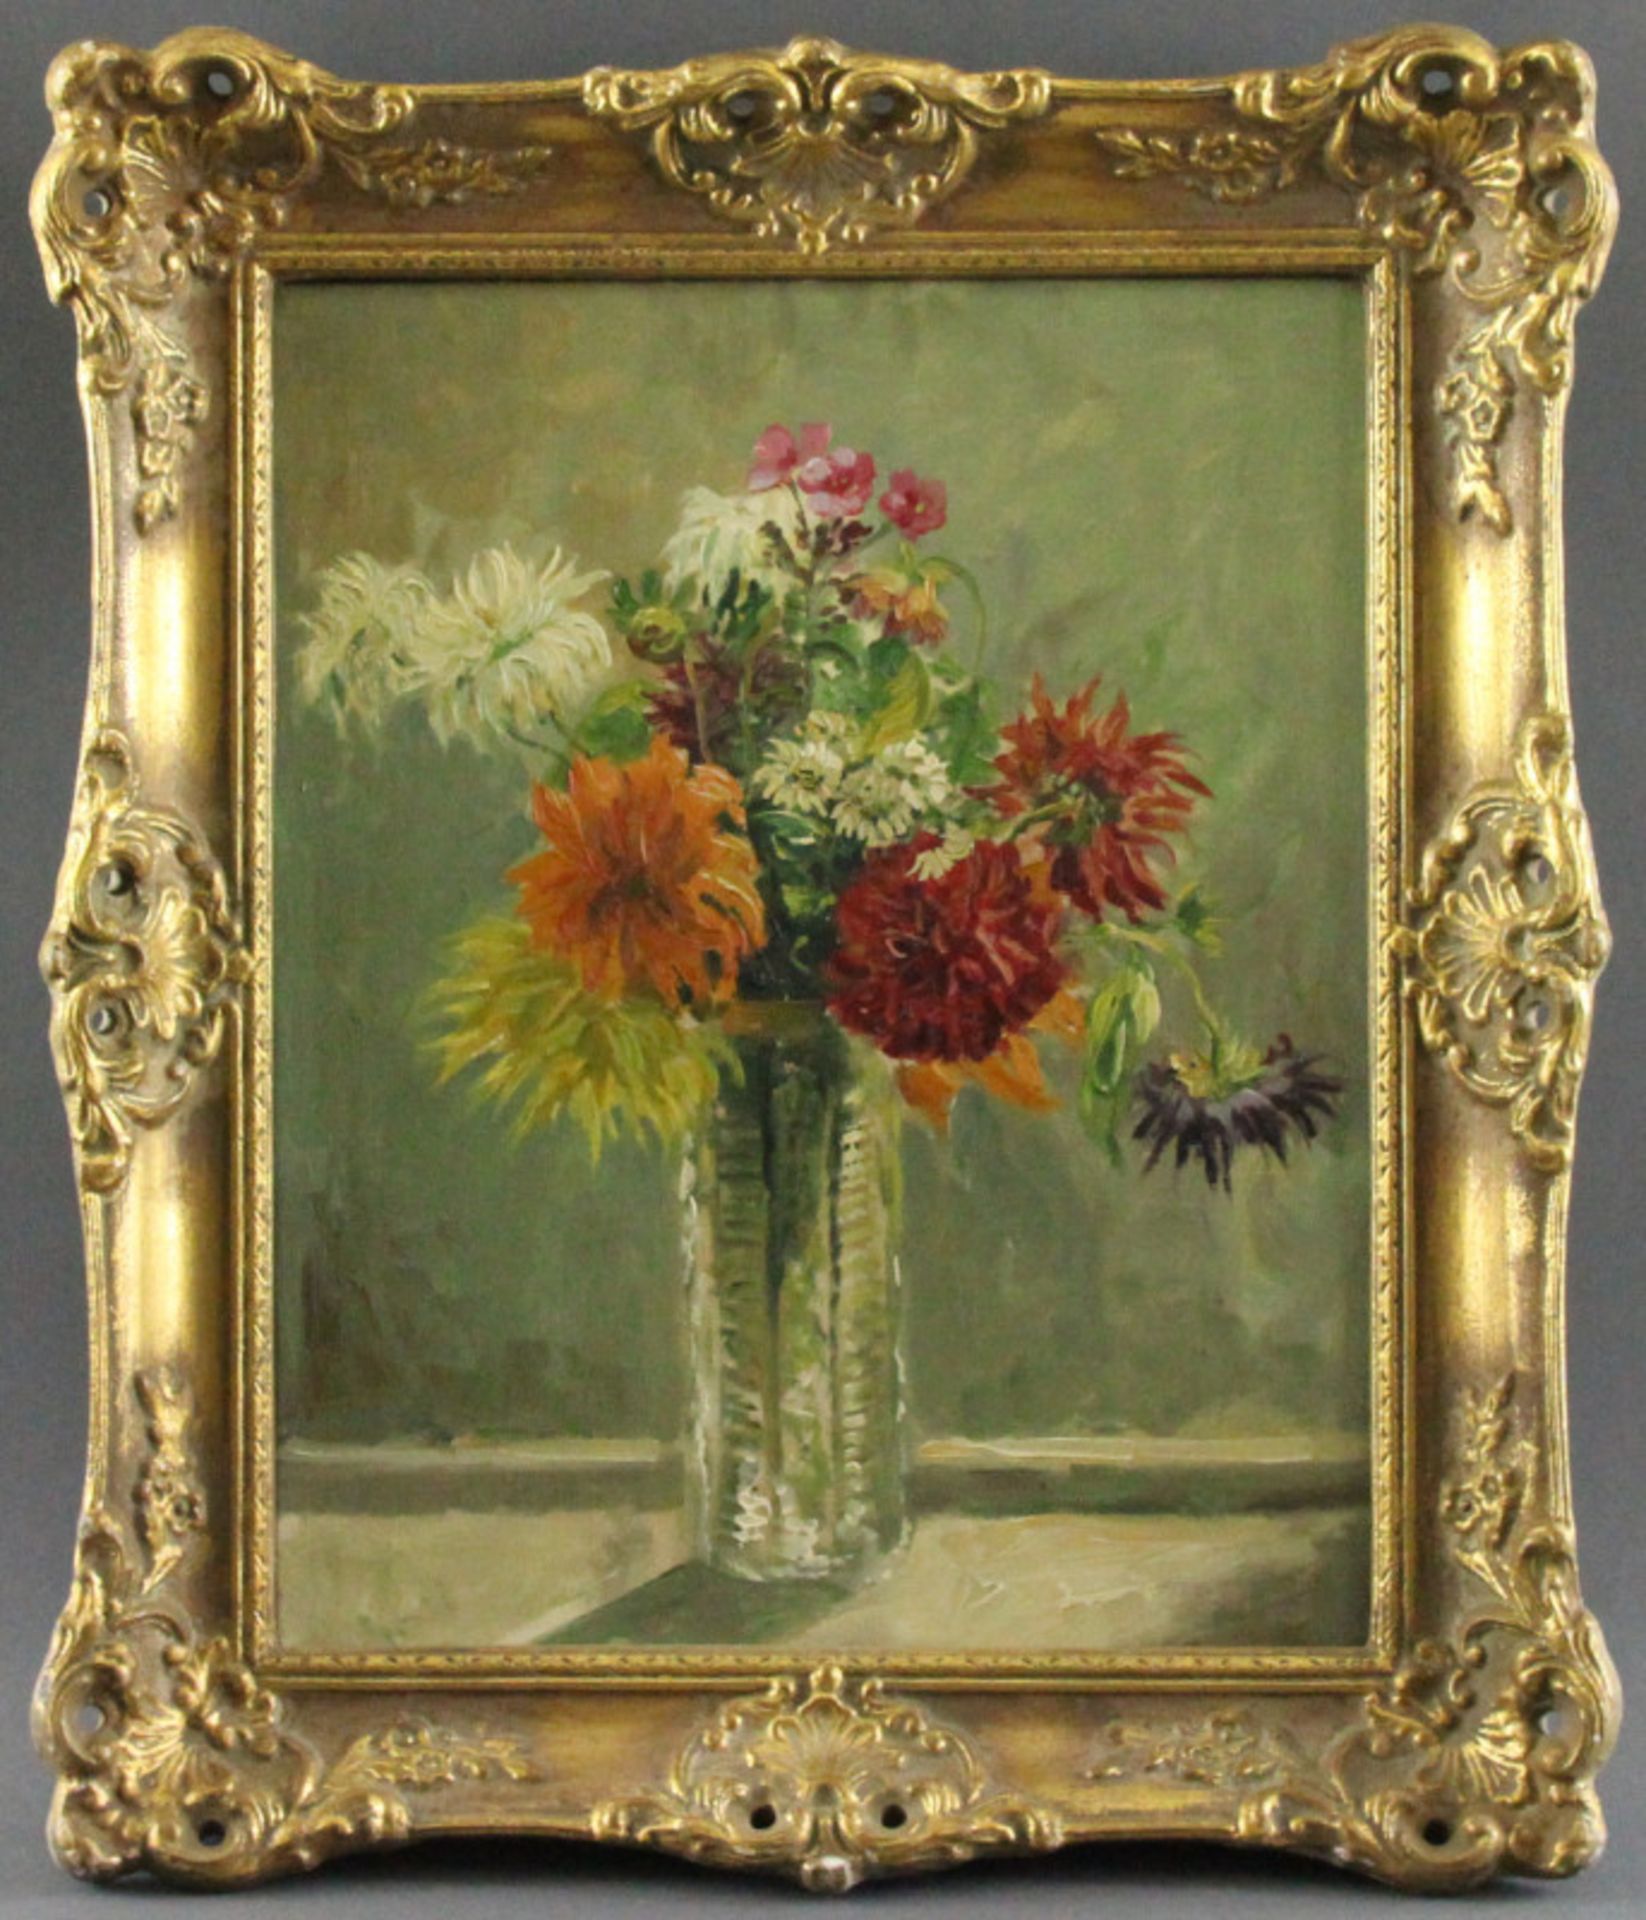 Wilhelmine Melzer (1868 - 1930) - Öl auf Leinwand, "Blumenstilleben in Stangenvase"unsigniert, guter